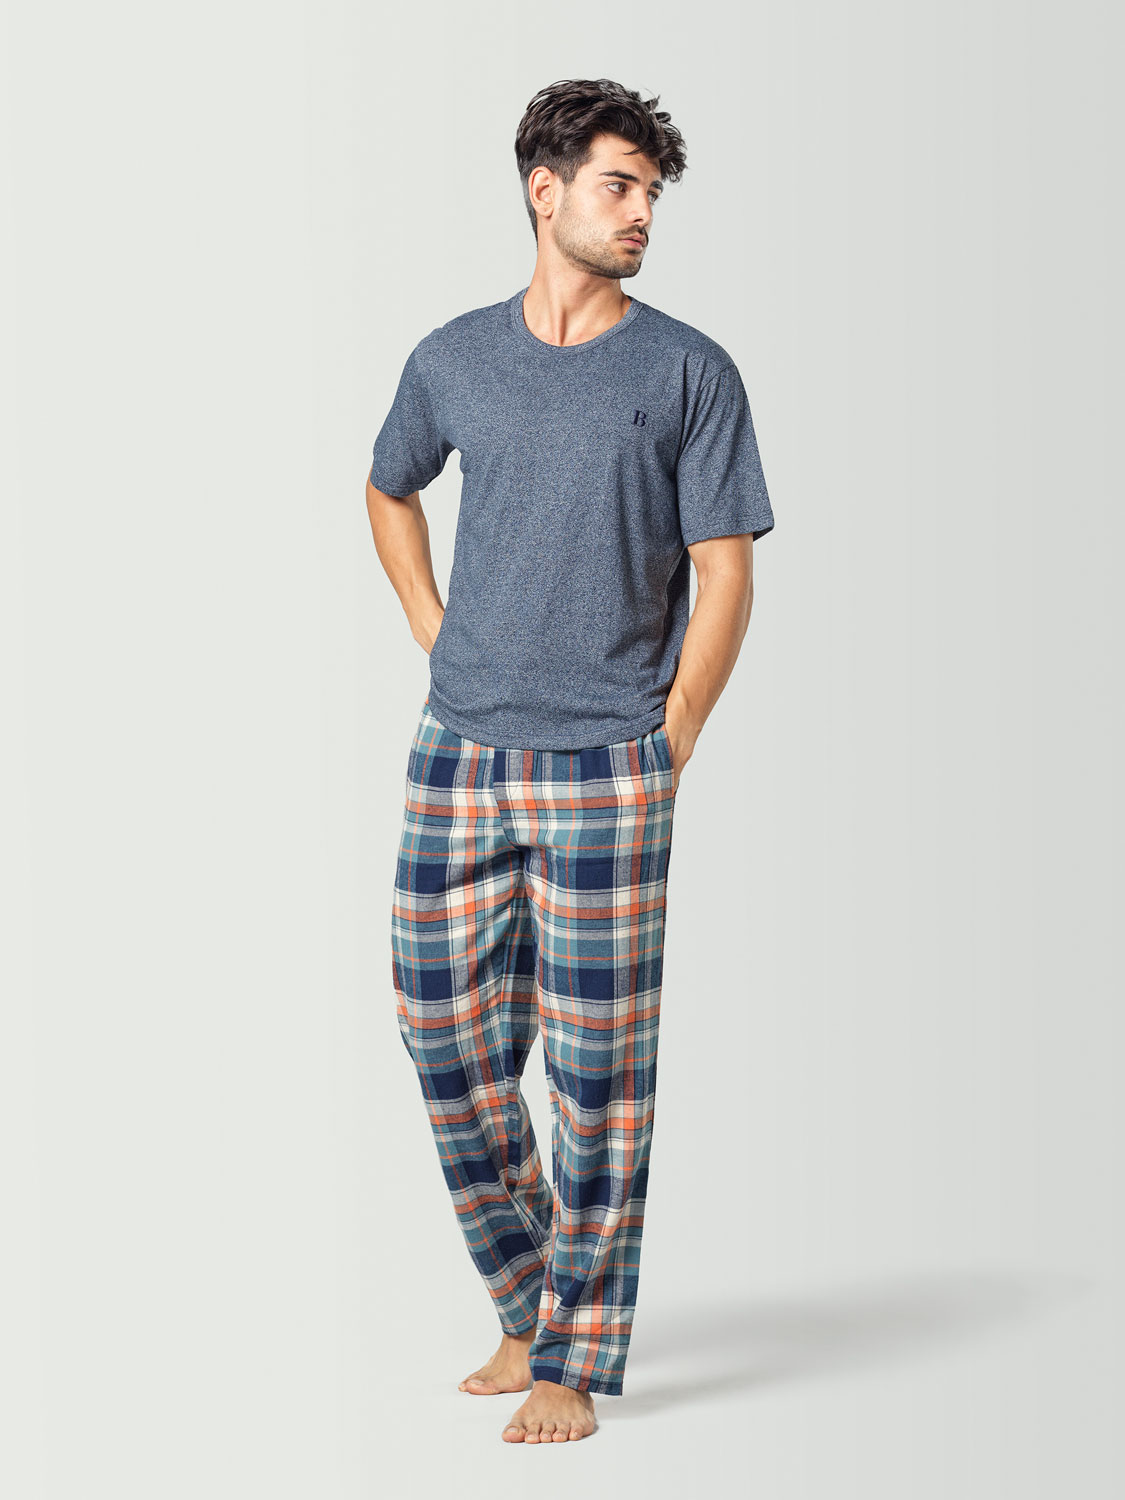 Pijama para hombre con camiseta de manga corta azul y pantalón a cuadros azul marino